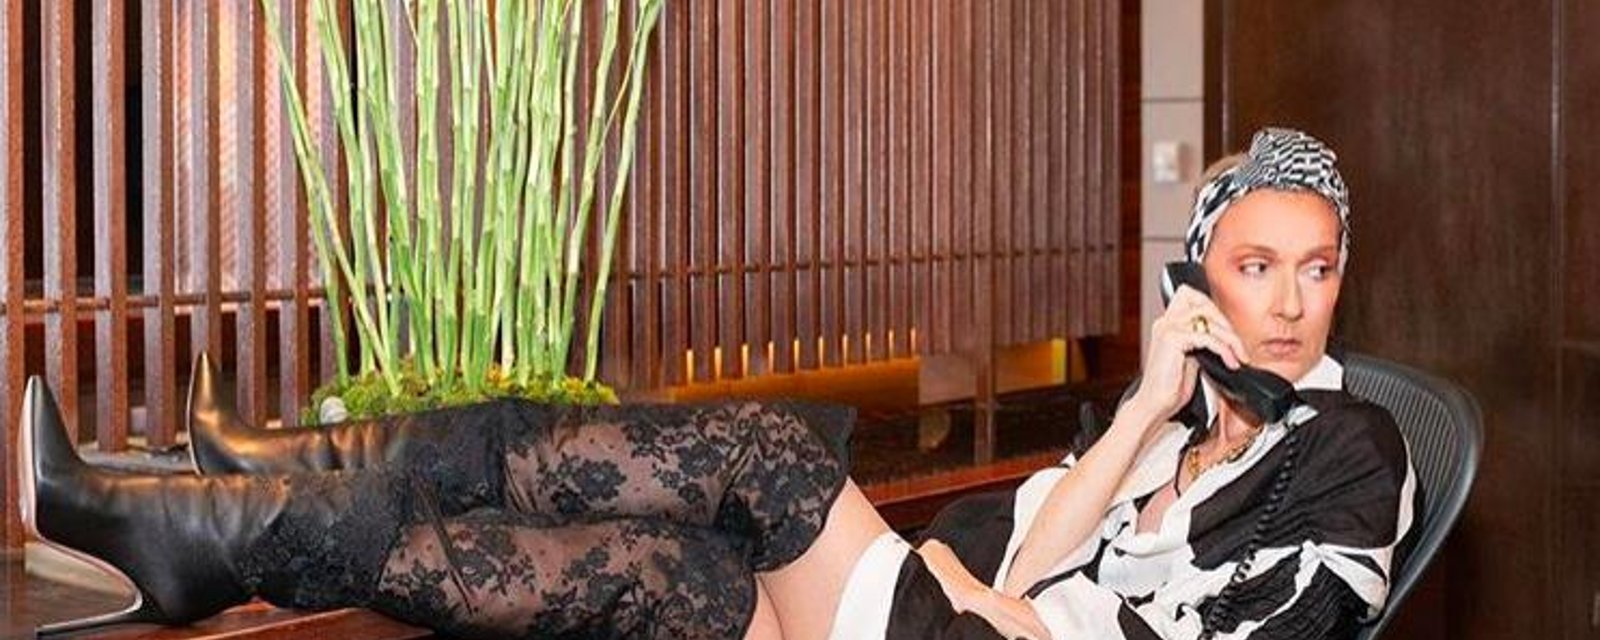 Céline Dion publie une nouvelle photo sexy qui enflamme le Web